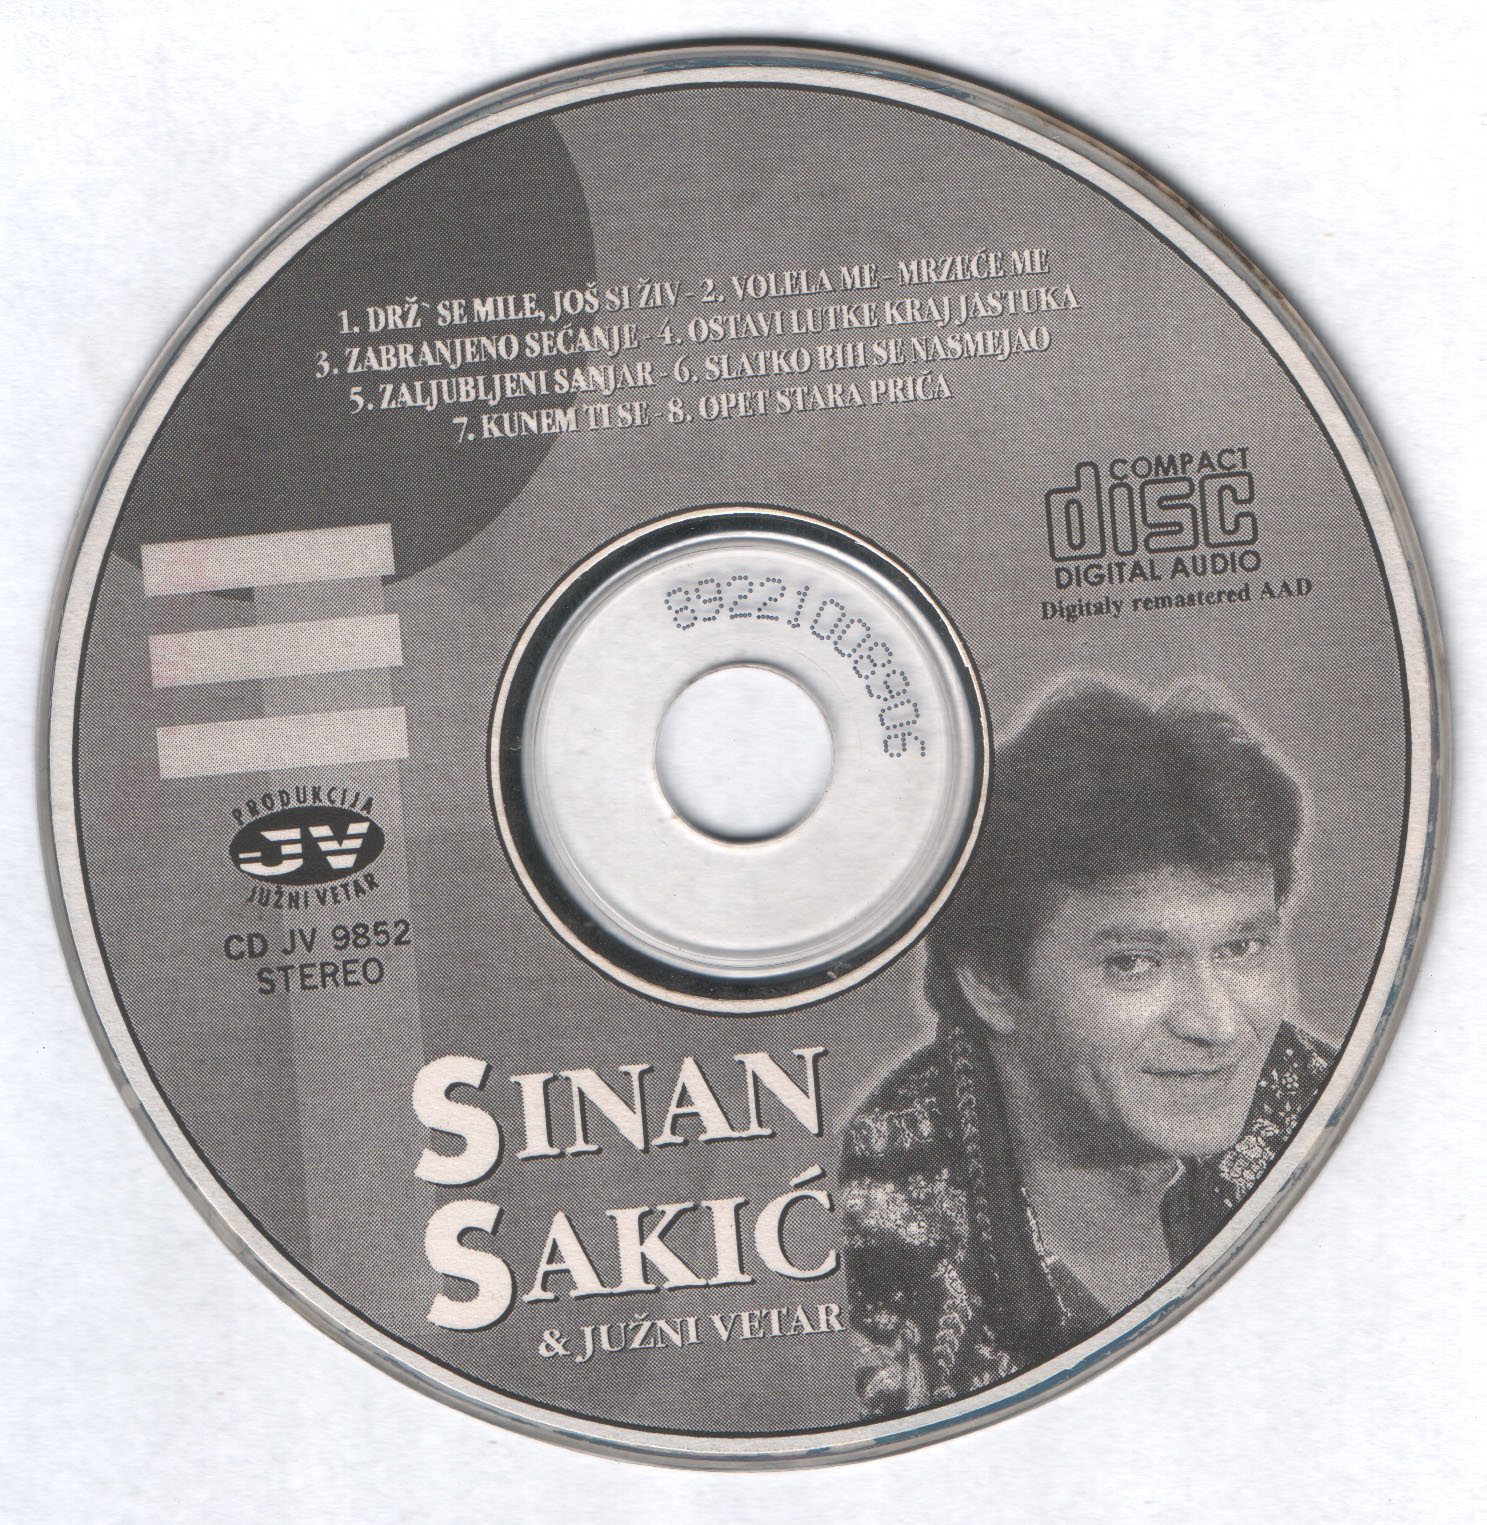 Sinan Sakic 1998 Cd